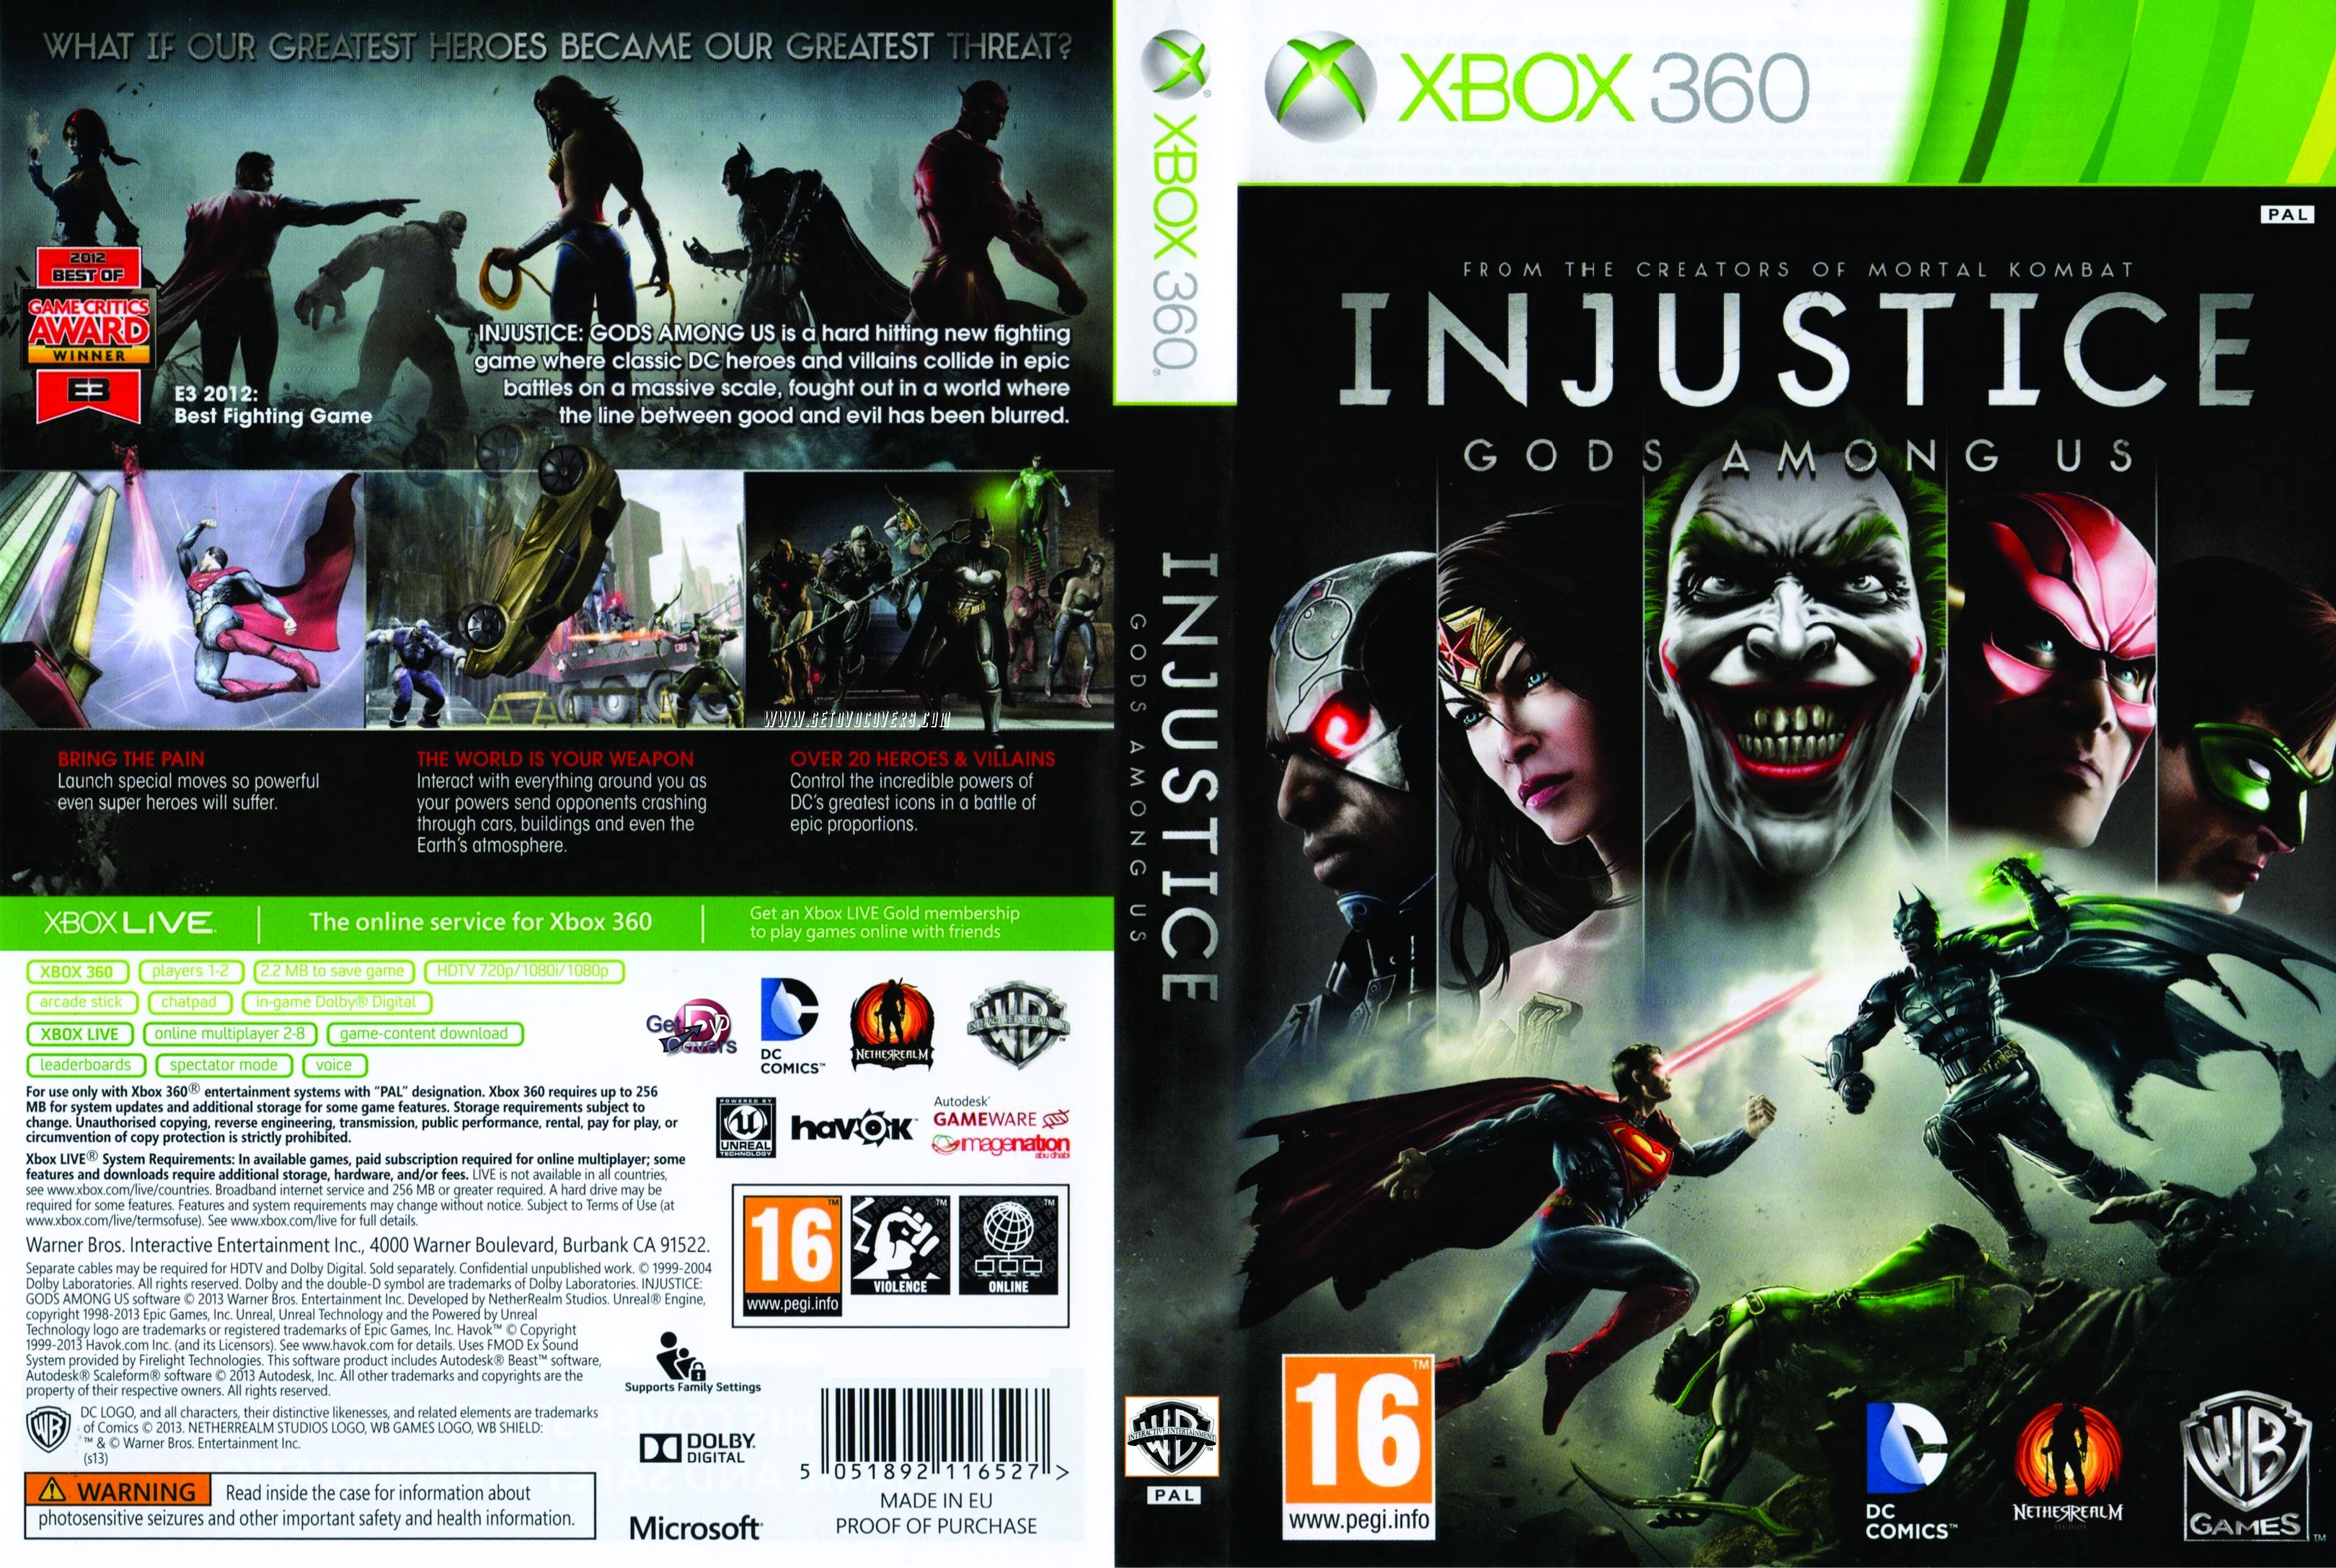 Xbox 360 life. Injustice Xbox 360 обложка. Injustice Xbox 360 диск. Injustice Gods among us Xbox 360. [Xbox 360] Injustice: Gods among us (2013).